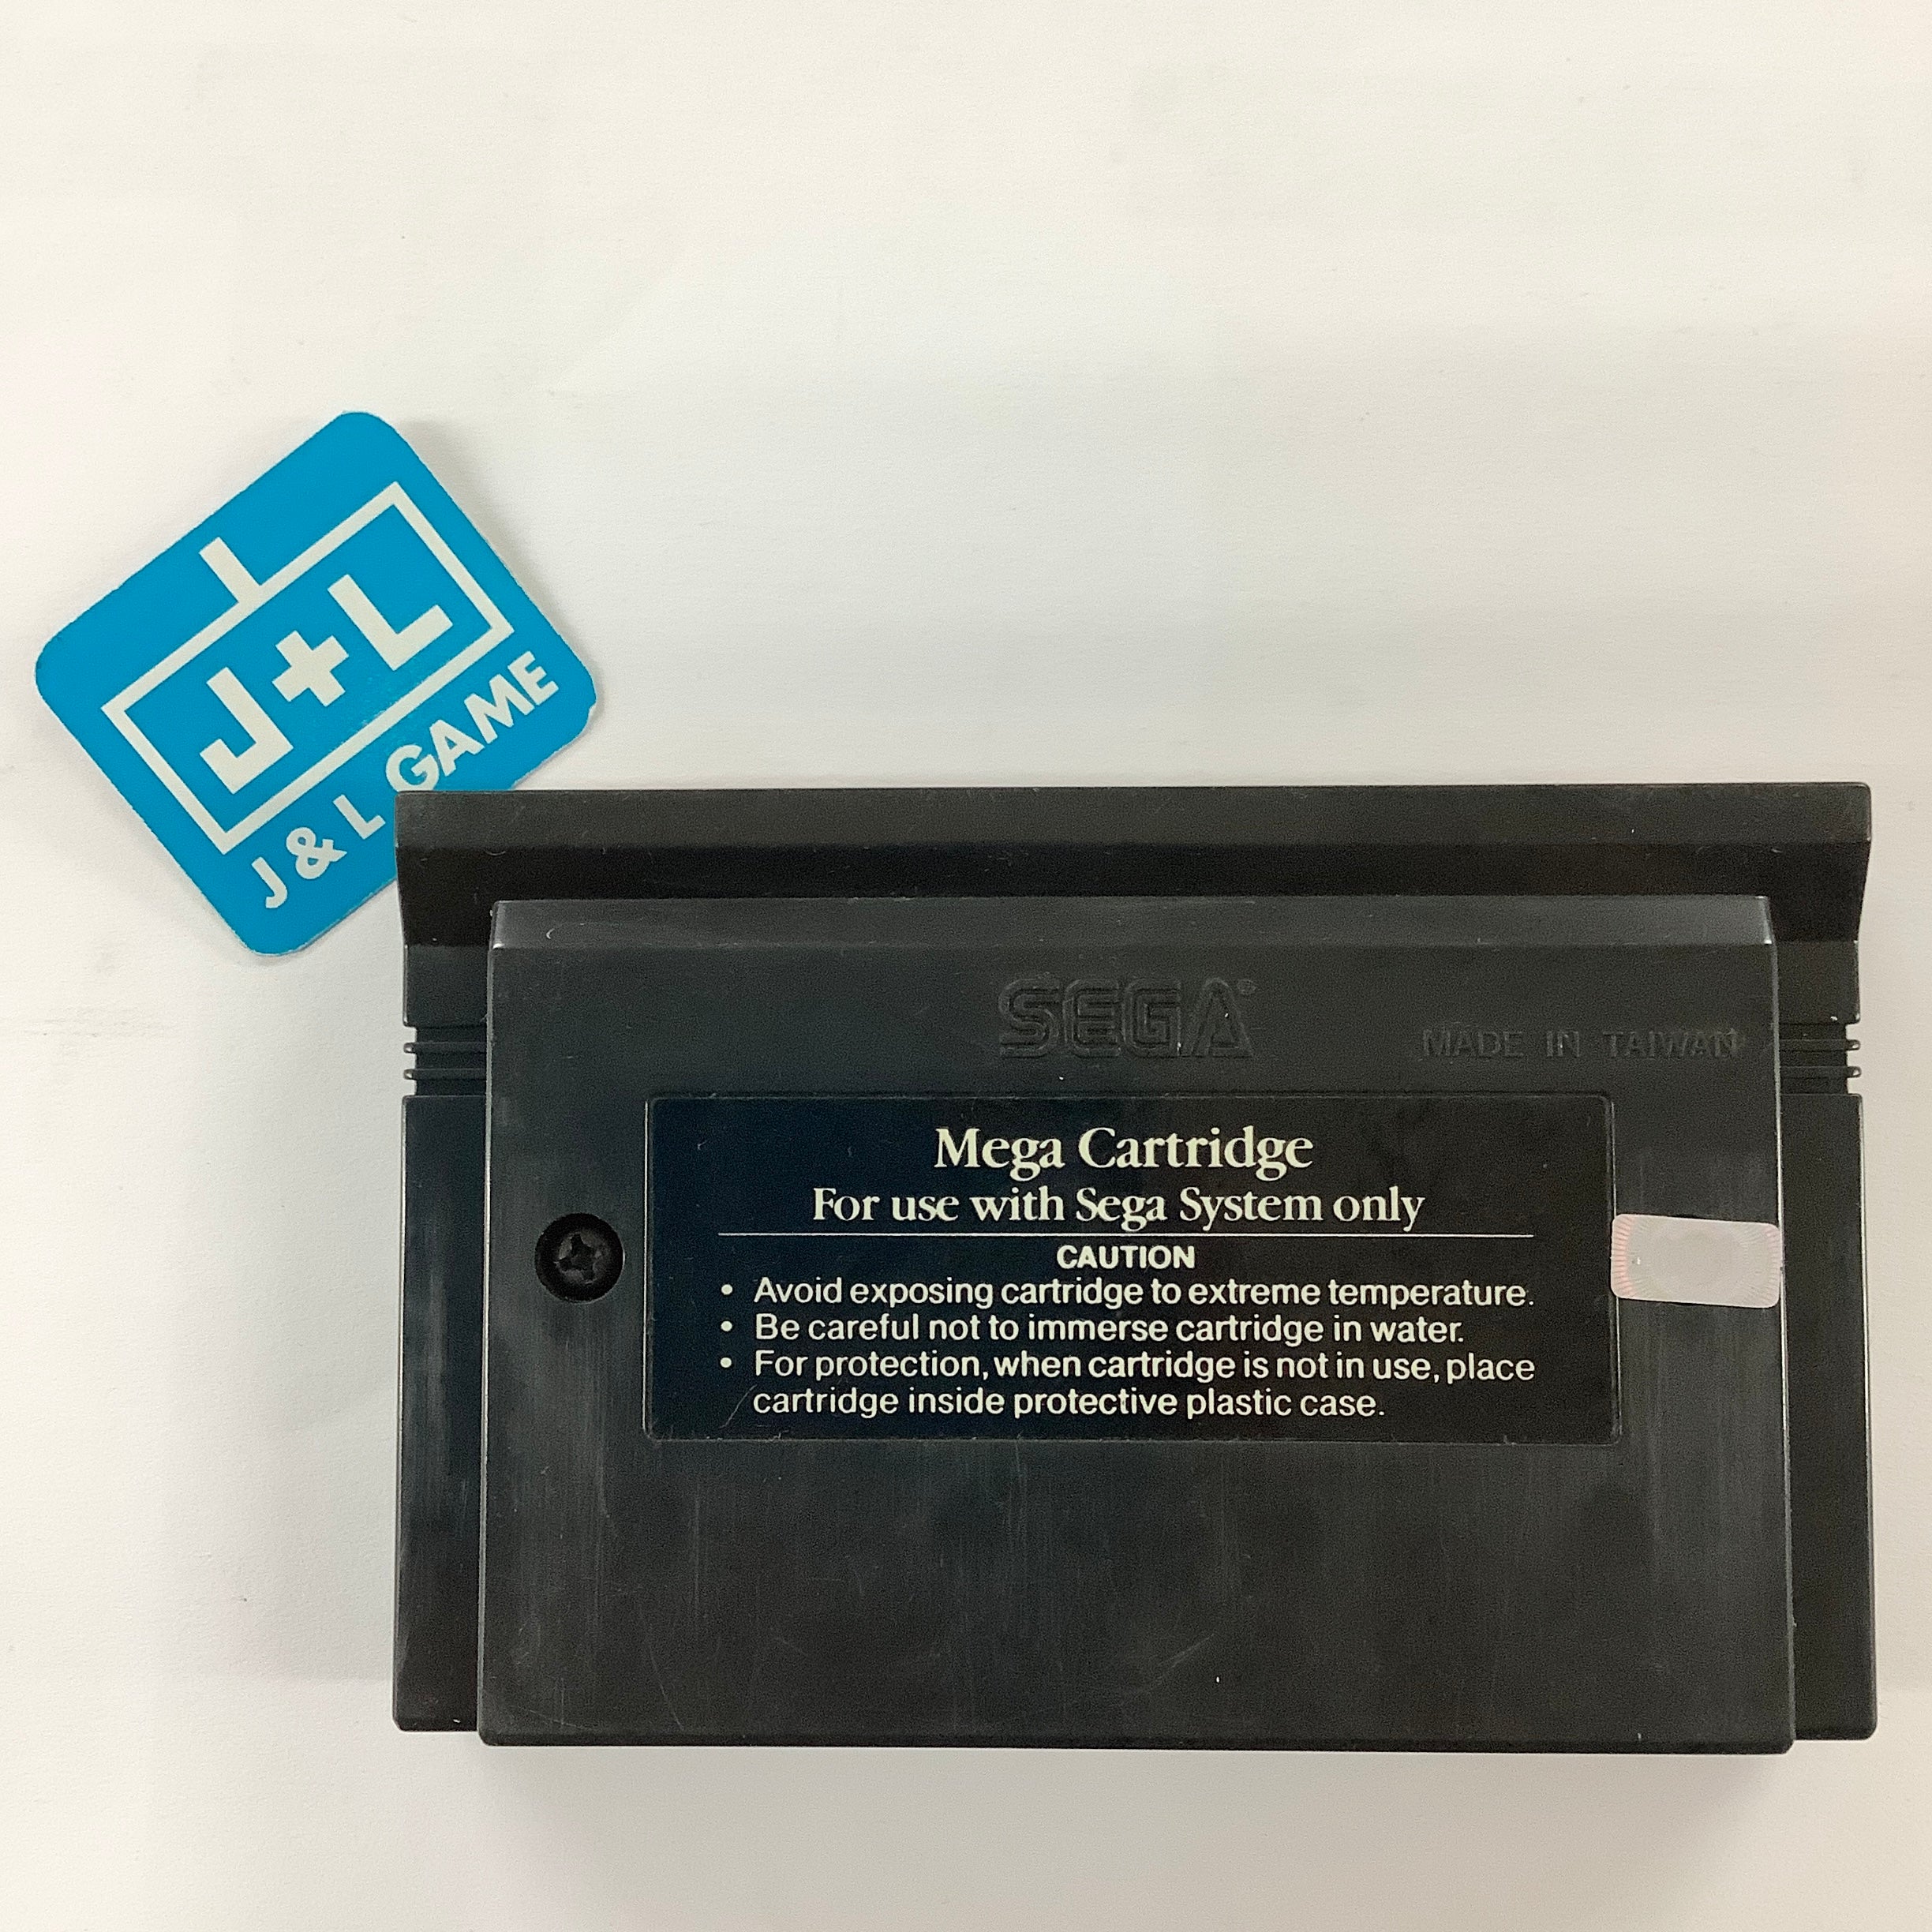 Black Belt - (SMS) SEGA Master System [Pre-Owned] Video Games Sega   